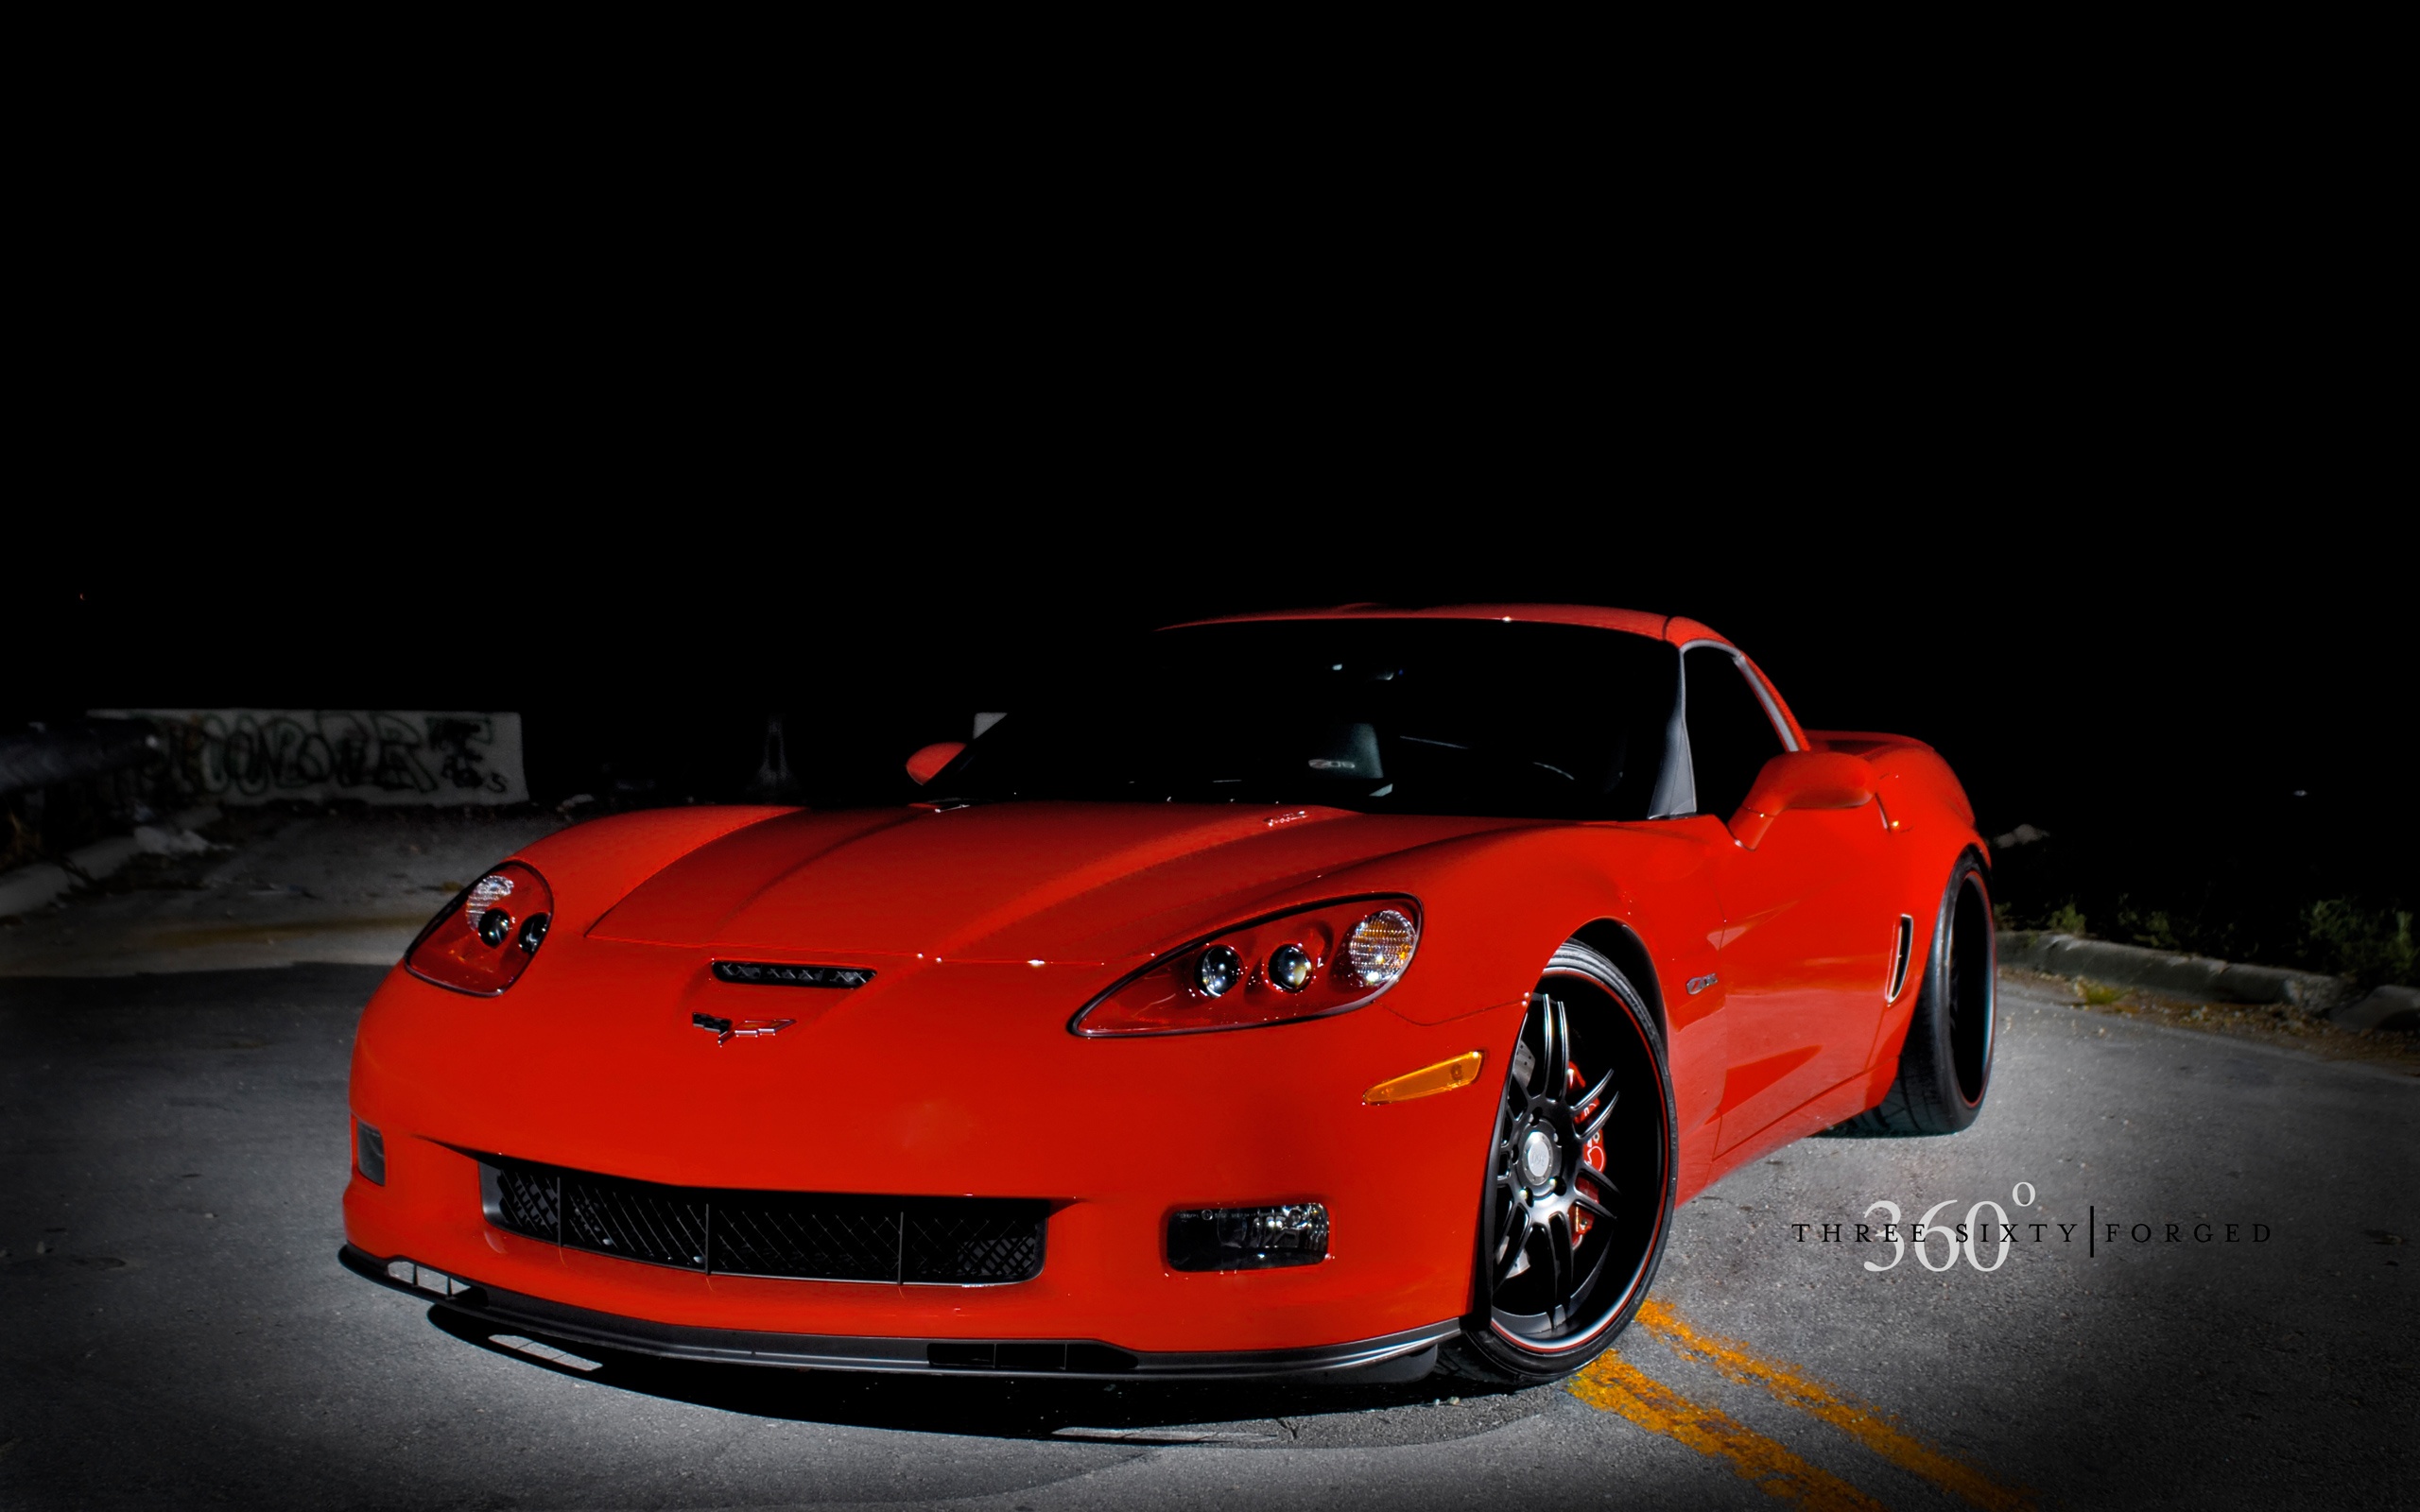 Corvette Z06 Red HD Wallpaper For Desktop